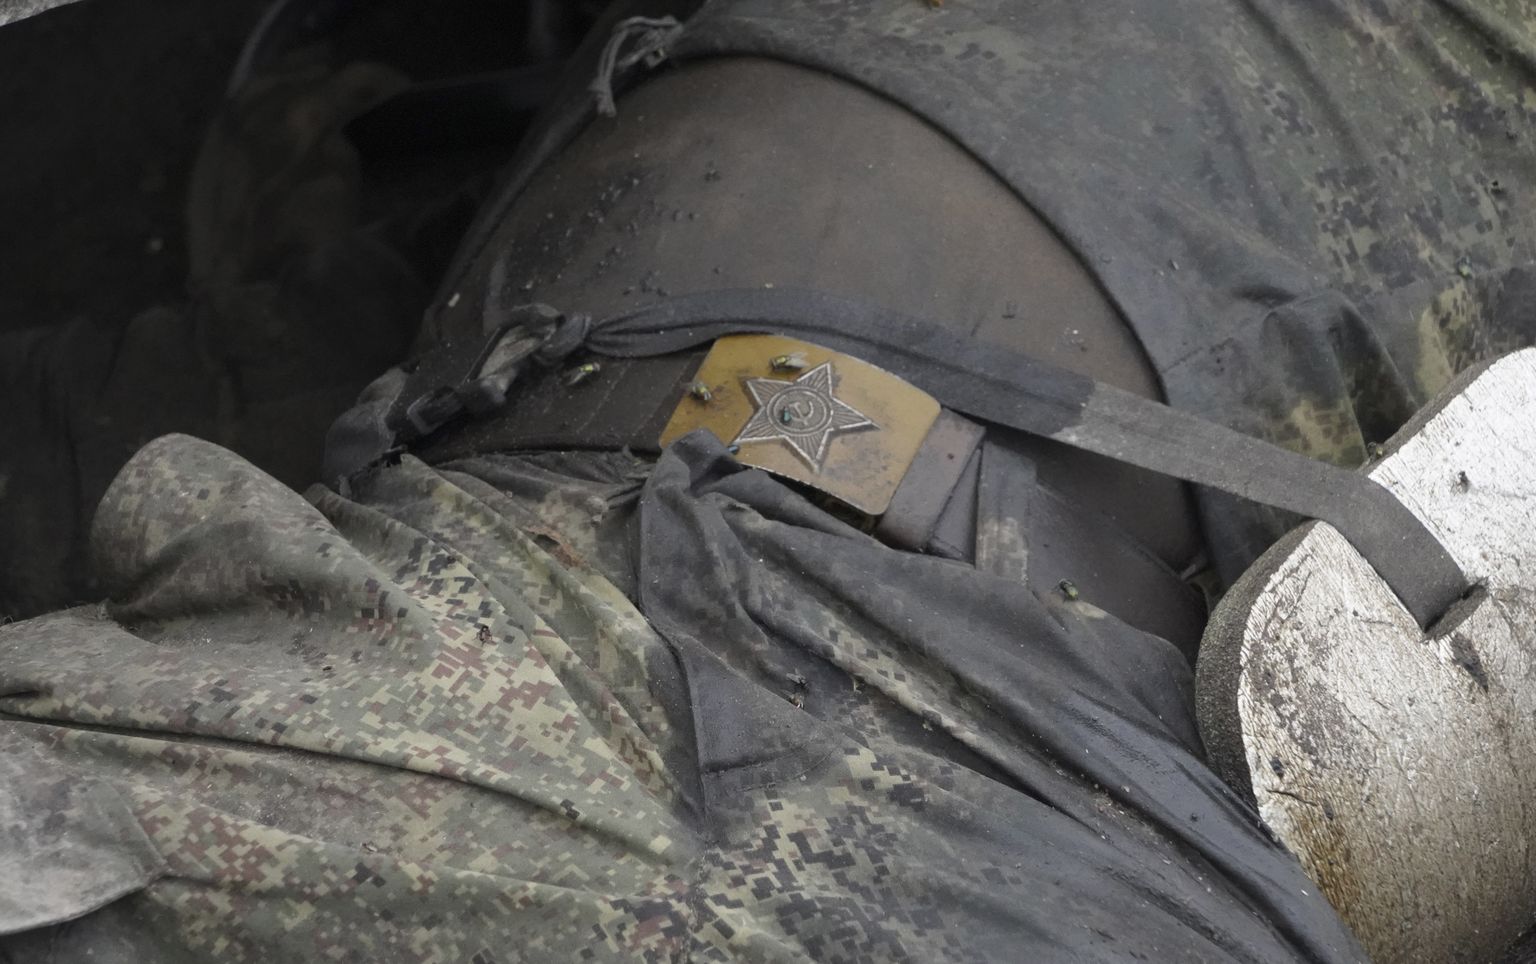 Звезда советской армии на ремне убитого российского солдата. Купянск, Харьковская область, октябрь 2022 года.